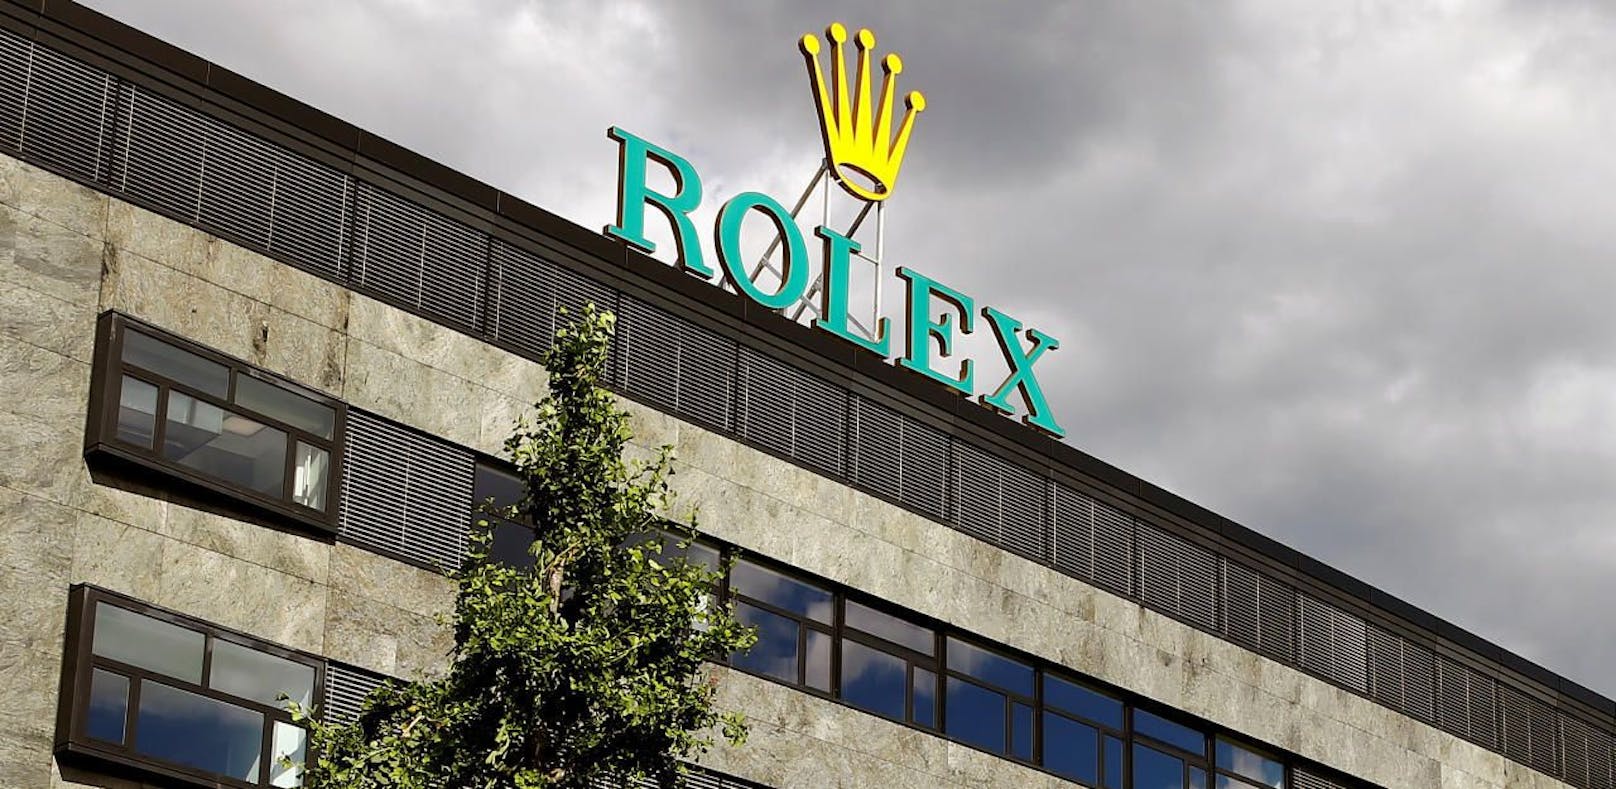 400 Rolex-Angestellte nach Gift-Alarm evakuiert